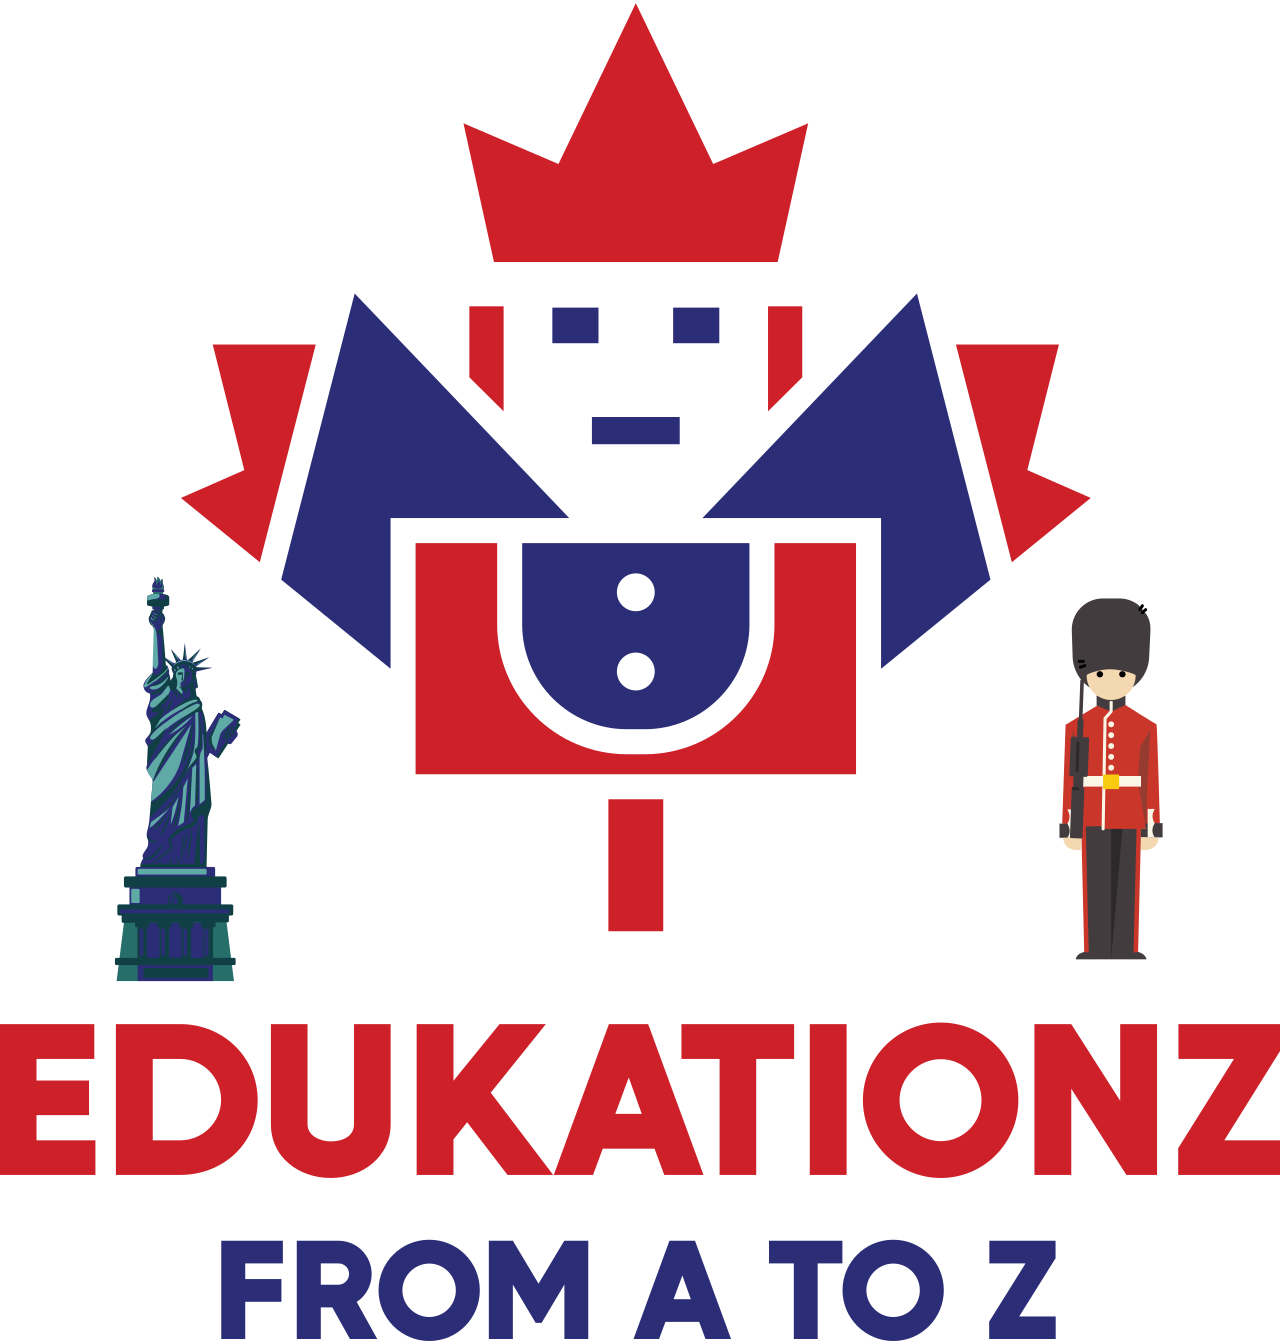 EDUKATIONZ's logo